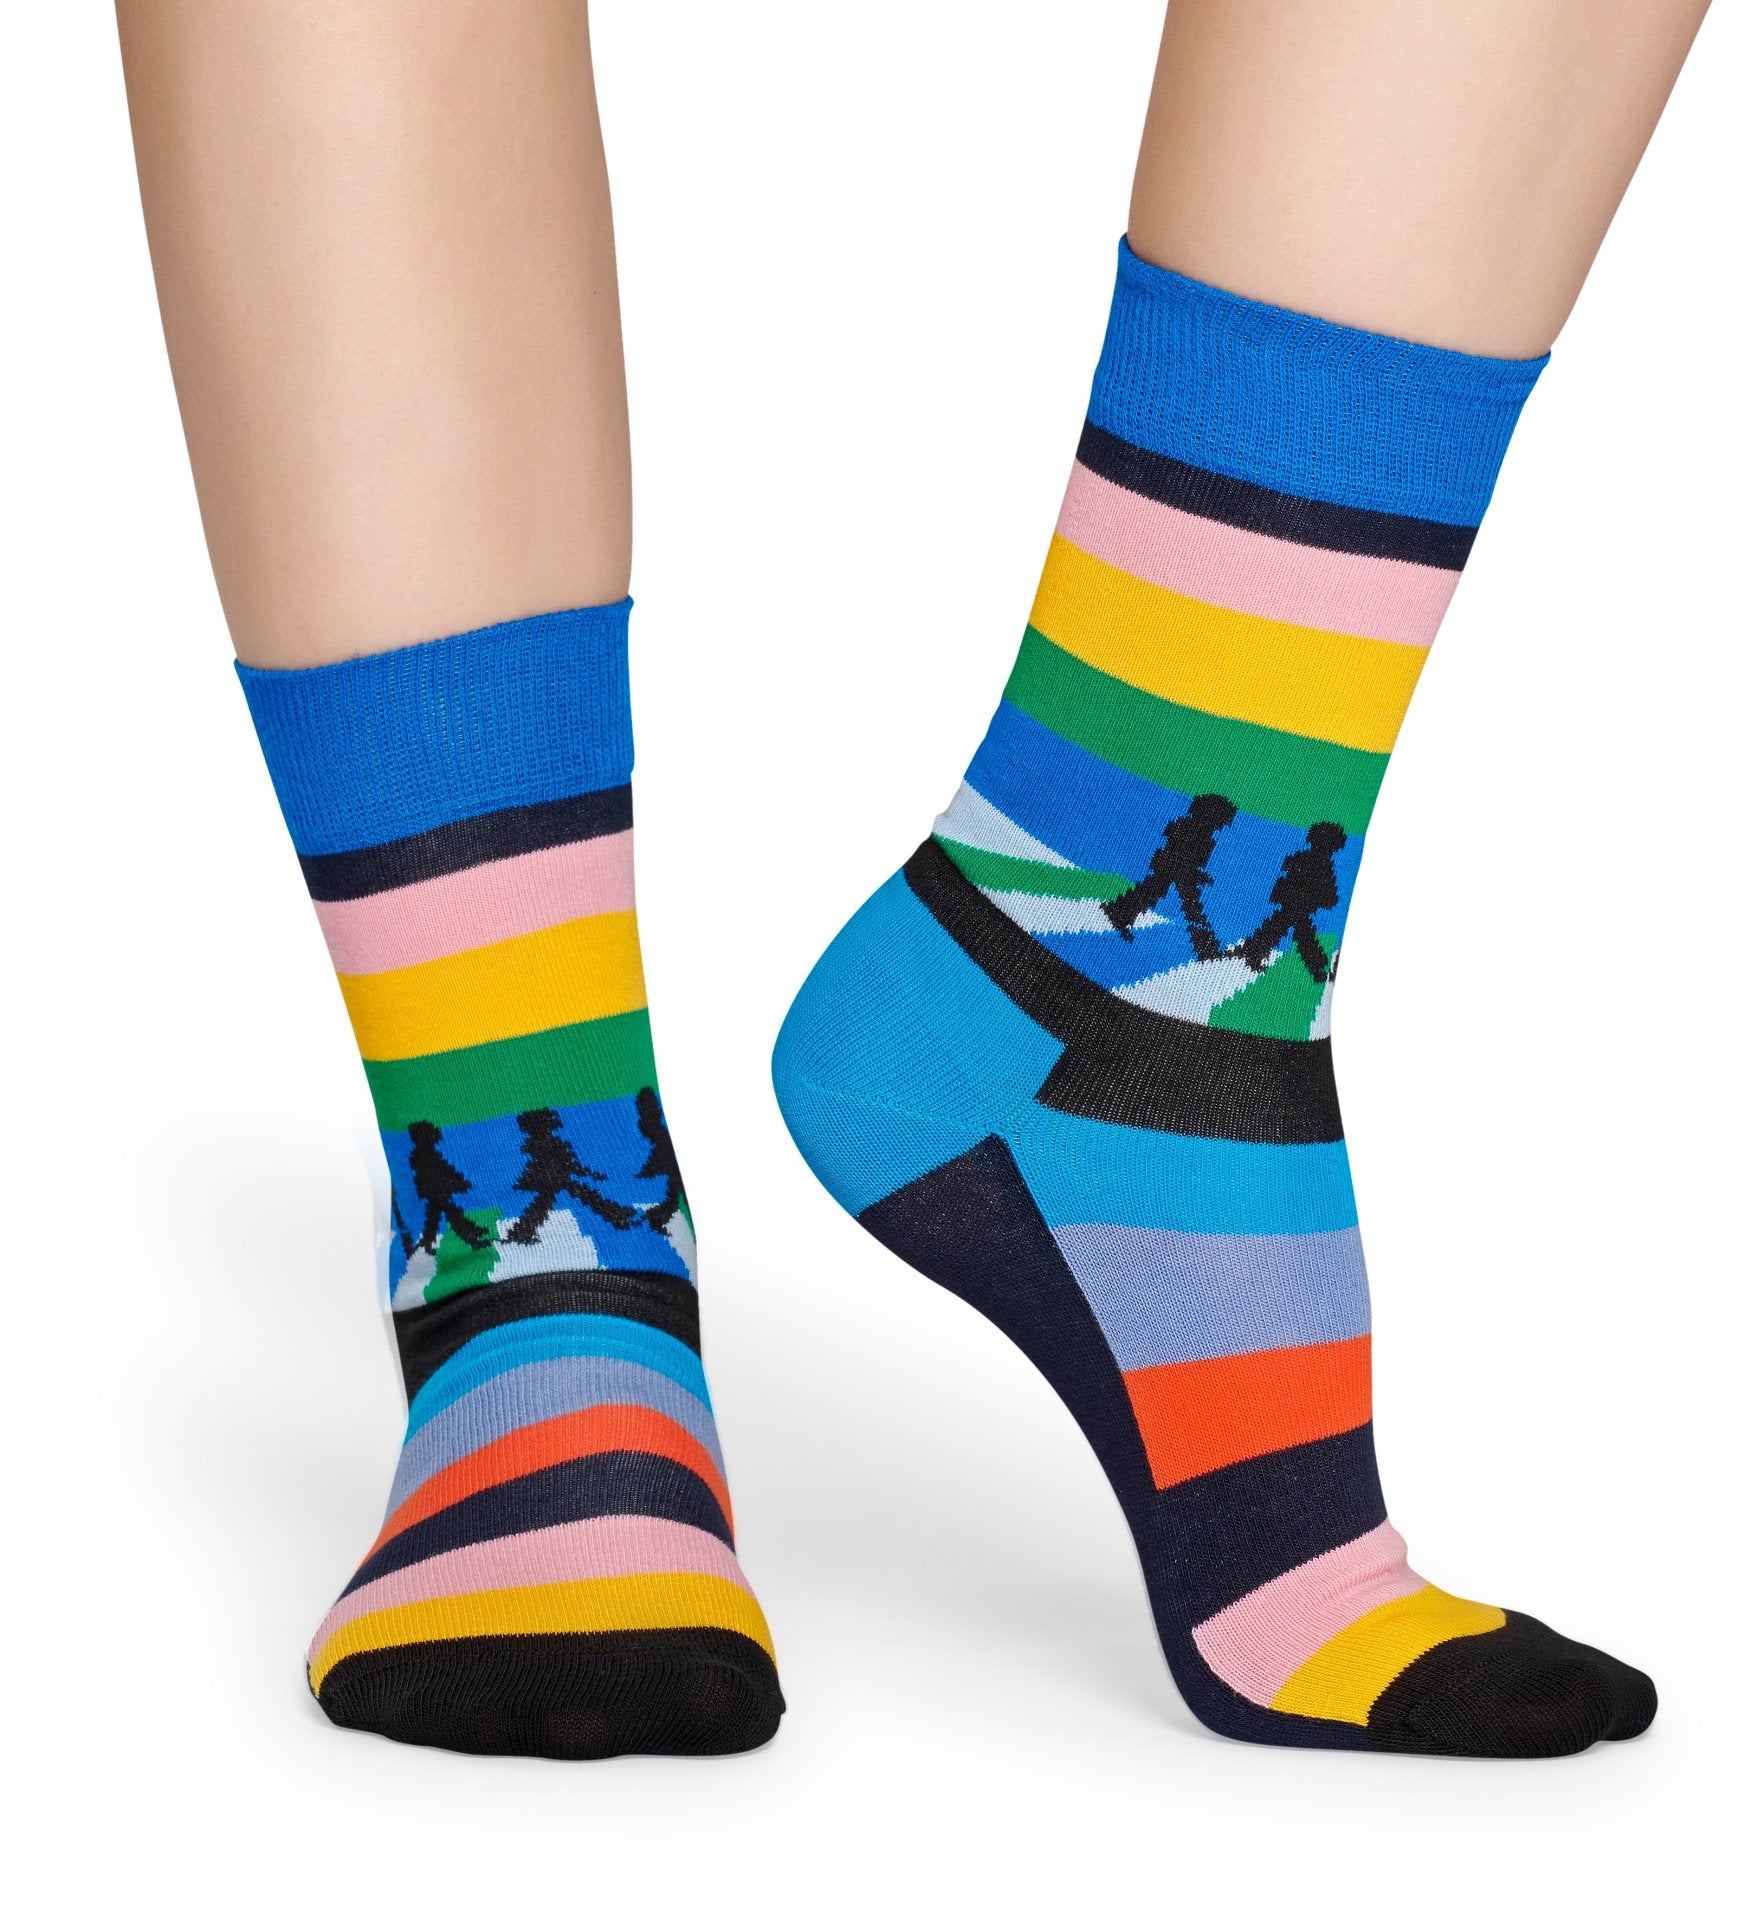 Modré pruhované ponožky z kolekce Happy Socks x Beatles, vzor Legend Crossing